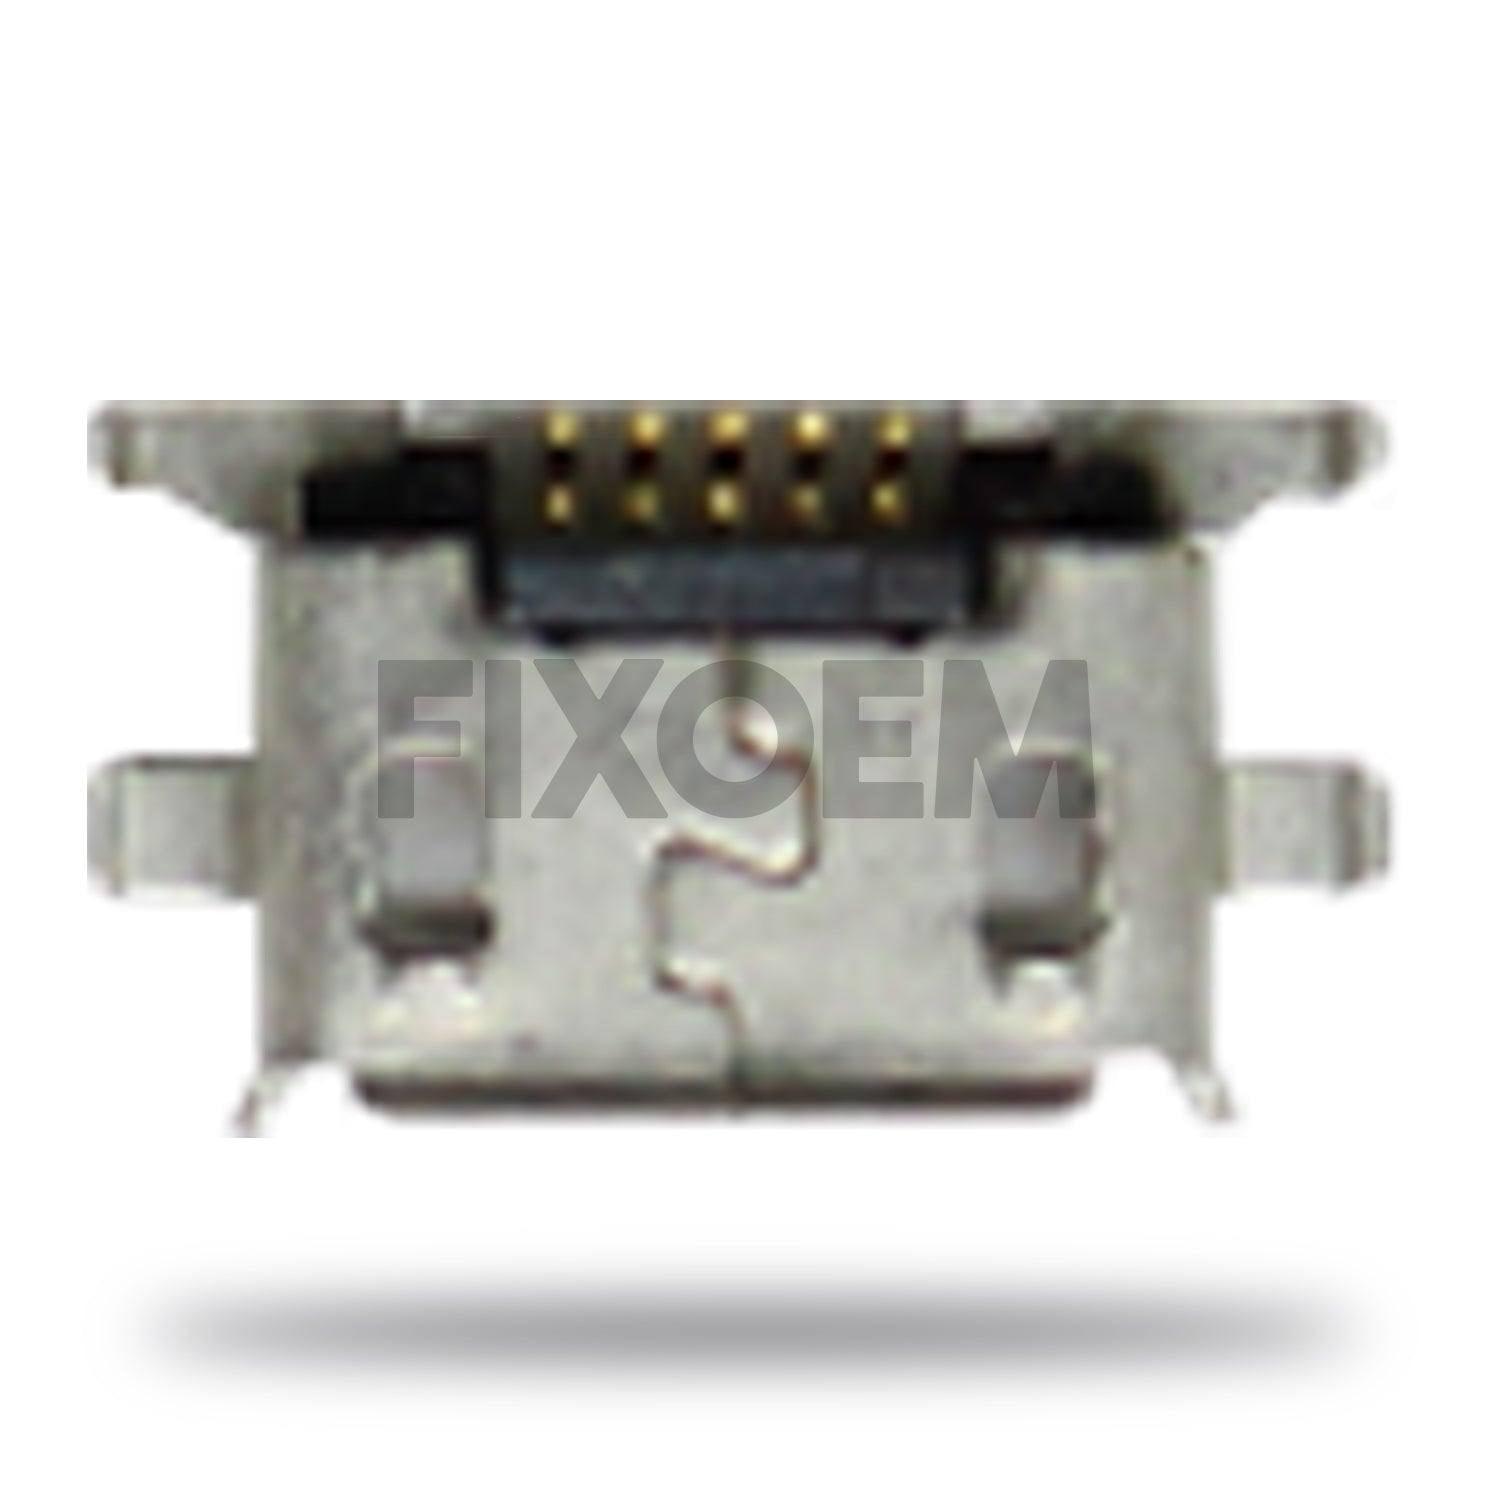 Pin Carga M24 X8/X10 5Pz a solo $ 30.00 Refaccion y puestos celulares, refurbish y microelectronica.- FixOEM